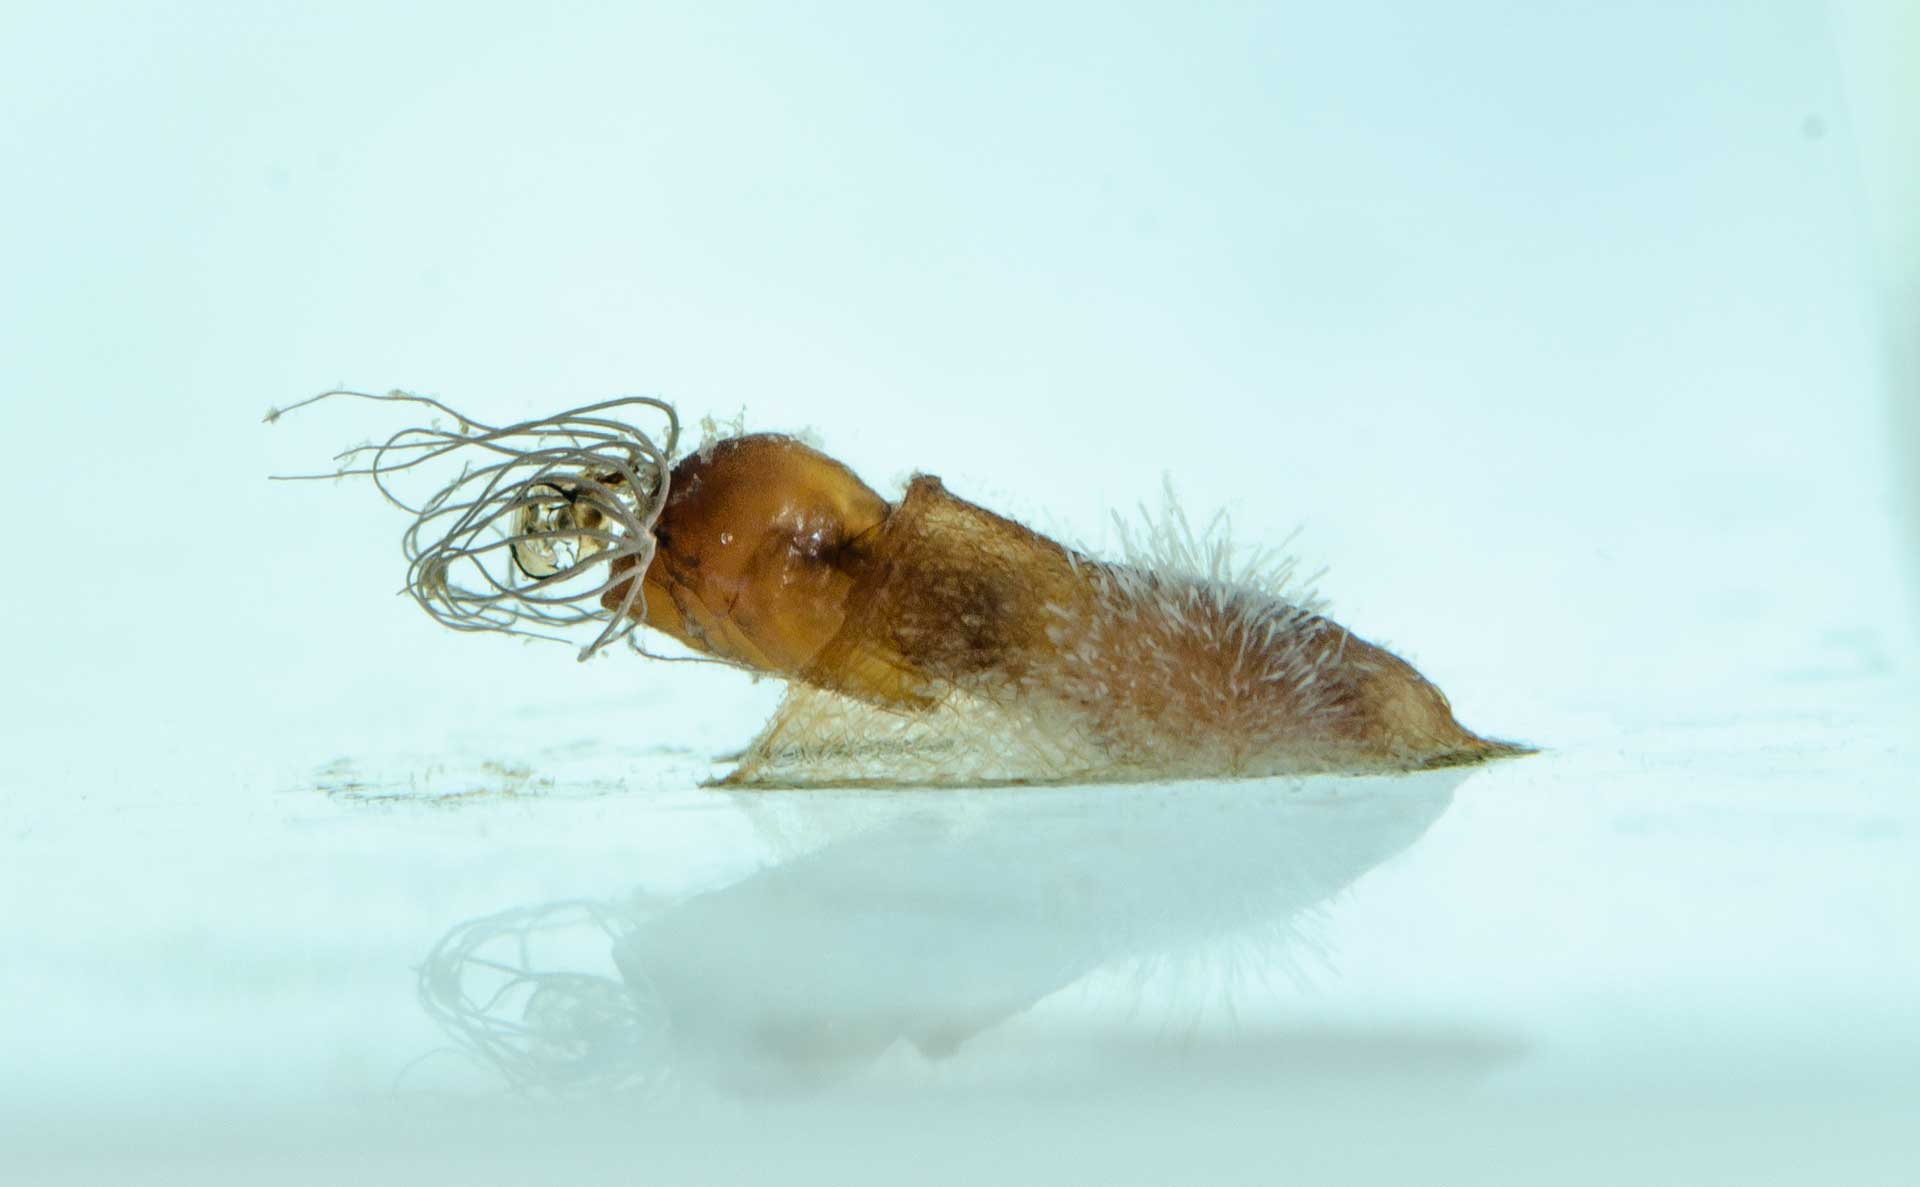 An der Wasseroberfläche aus der Puppe schlüpfende Kriebelmücke: Die Larvenentwicklung der Blutsauger findet in Fließgewässern statt. Bild: Dorian Dörge/Senckenberg